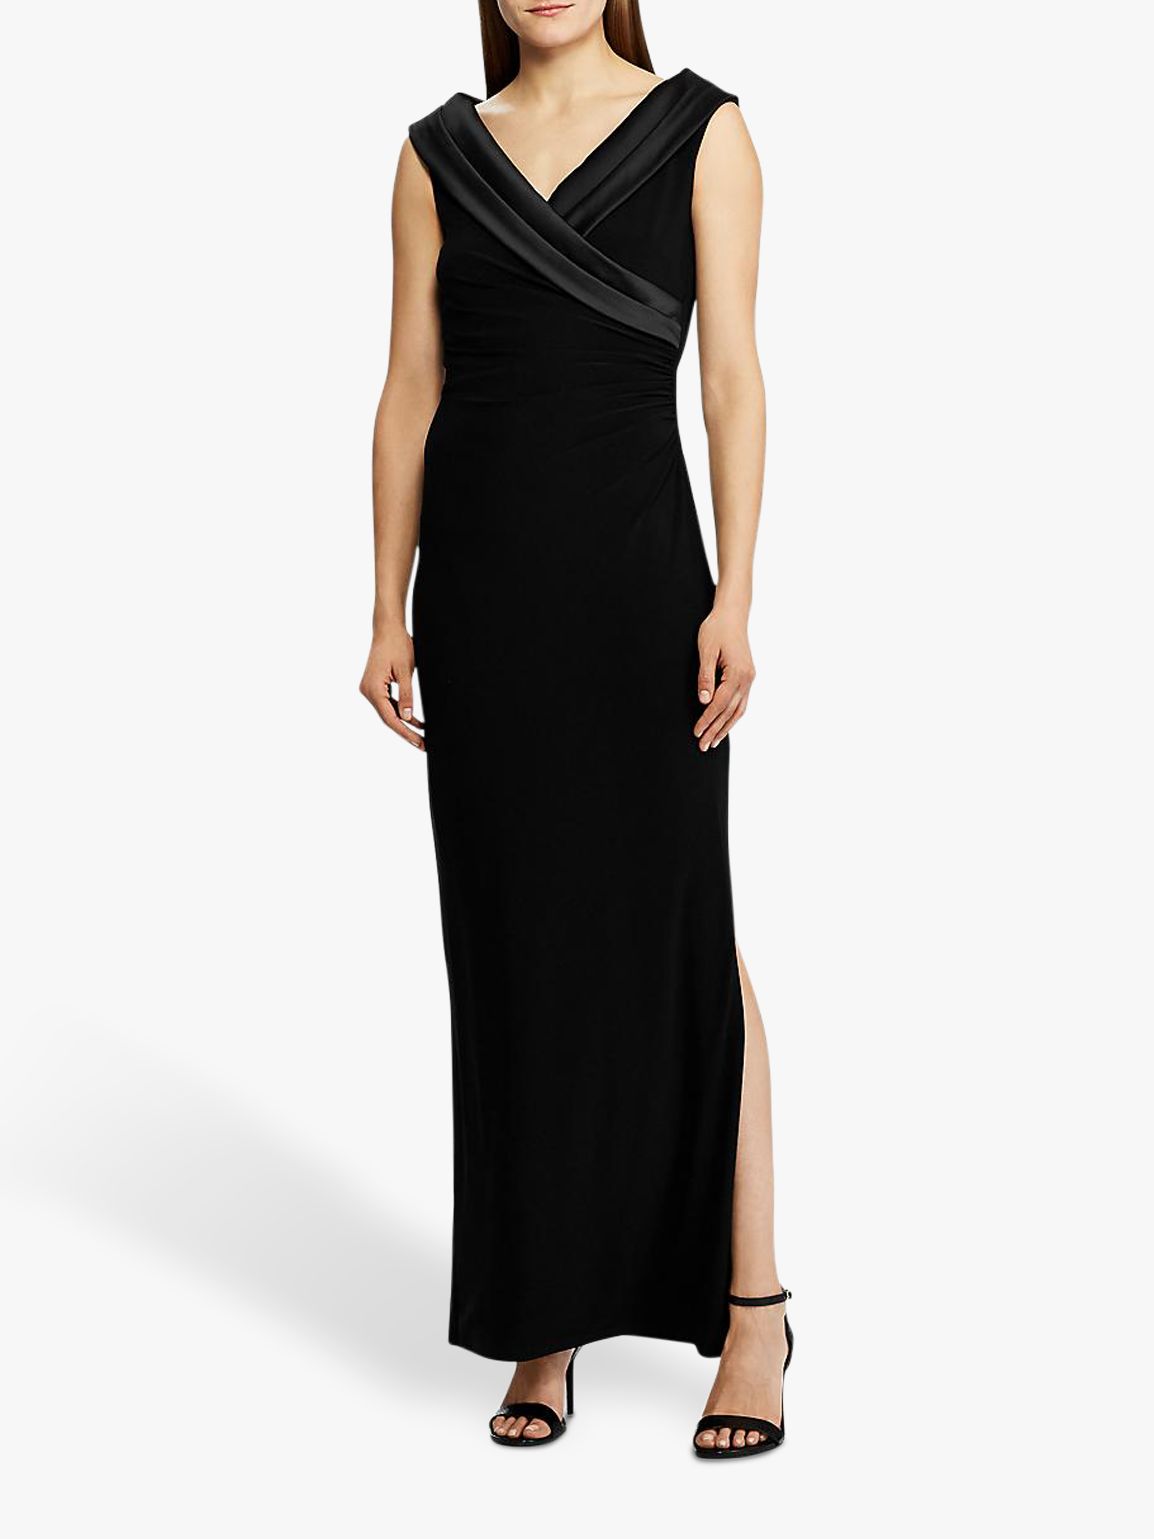 Lauren Ralph Lauren Leonetta Evening Dress, Black